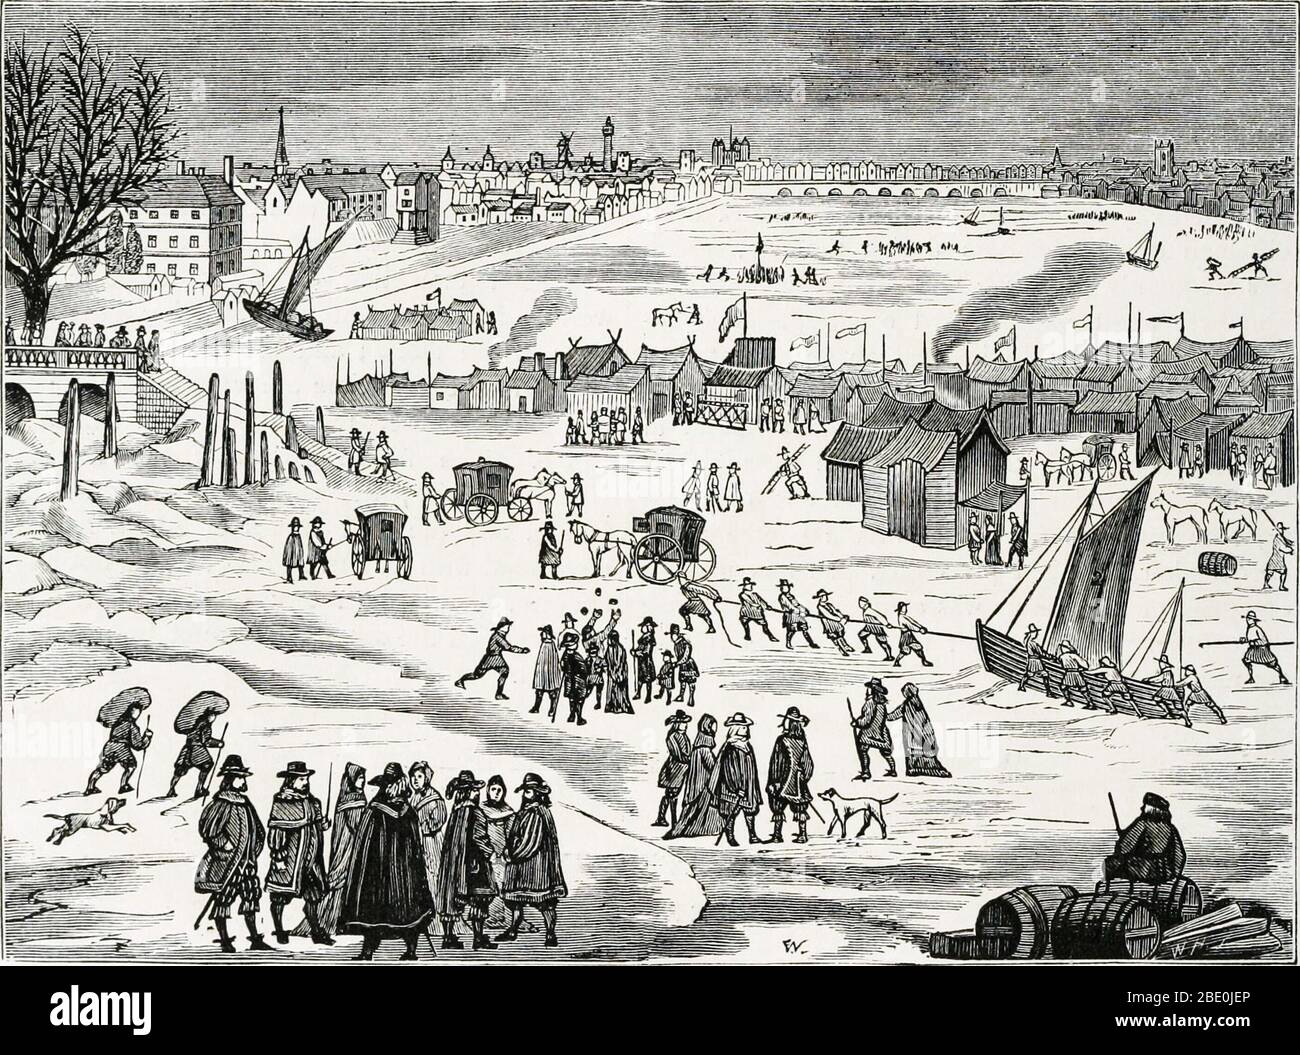 Eine Frostmesse an der Themse, die flussabwärts in Richtung London Bridge blickt, während des Großen Frosts von 1683-4, als der Fluss zwei Monate lang völlig gefroren war. Es war der am schlimmsten verzeichnete Frost in England und ähnliche Bedingungen betroffen viel von Europa als auch. Die Zeit zwischen dem 15. Und frühen 19. Jahrhundert war als die kleine Eiszeit bekannt. Die kleine Eiszeit war eine Periode der Abkühlung, die während einer Periode stattfand, die allgemein angenommen wurde, um vom 16. Bis zum 19. Jahrhundert zu laufen, obwohl einige das Startdatum im frühen 14. Jahrhundert platzieren. In der Zeit von 1645 bis 1715, mitten in der Kleinen Eiszeit Stockfoto